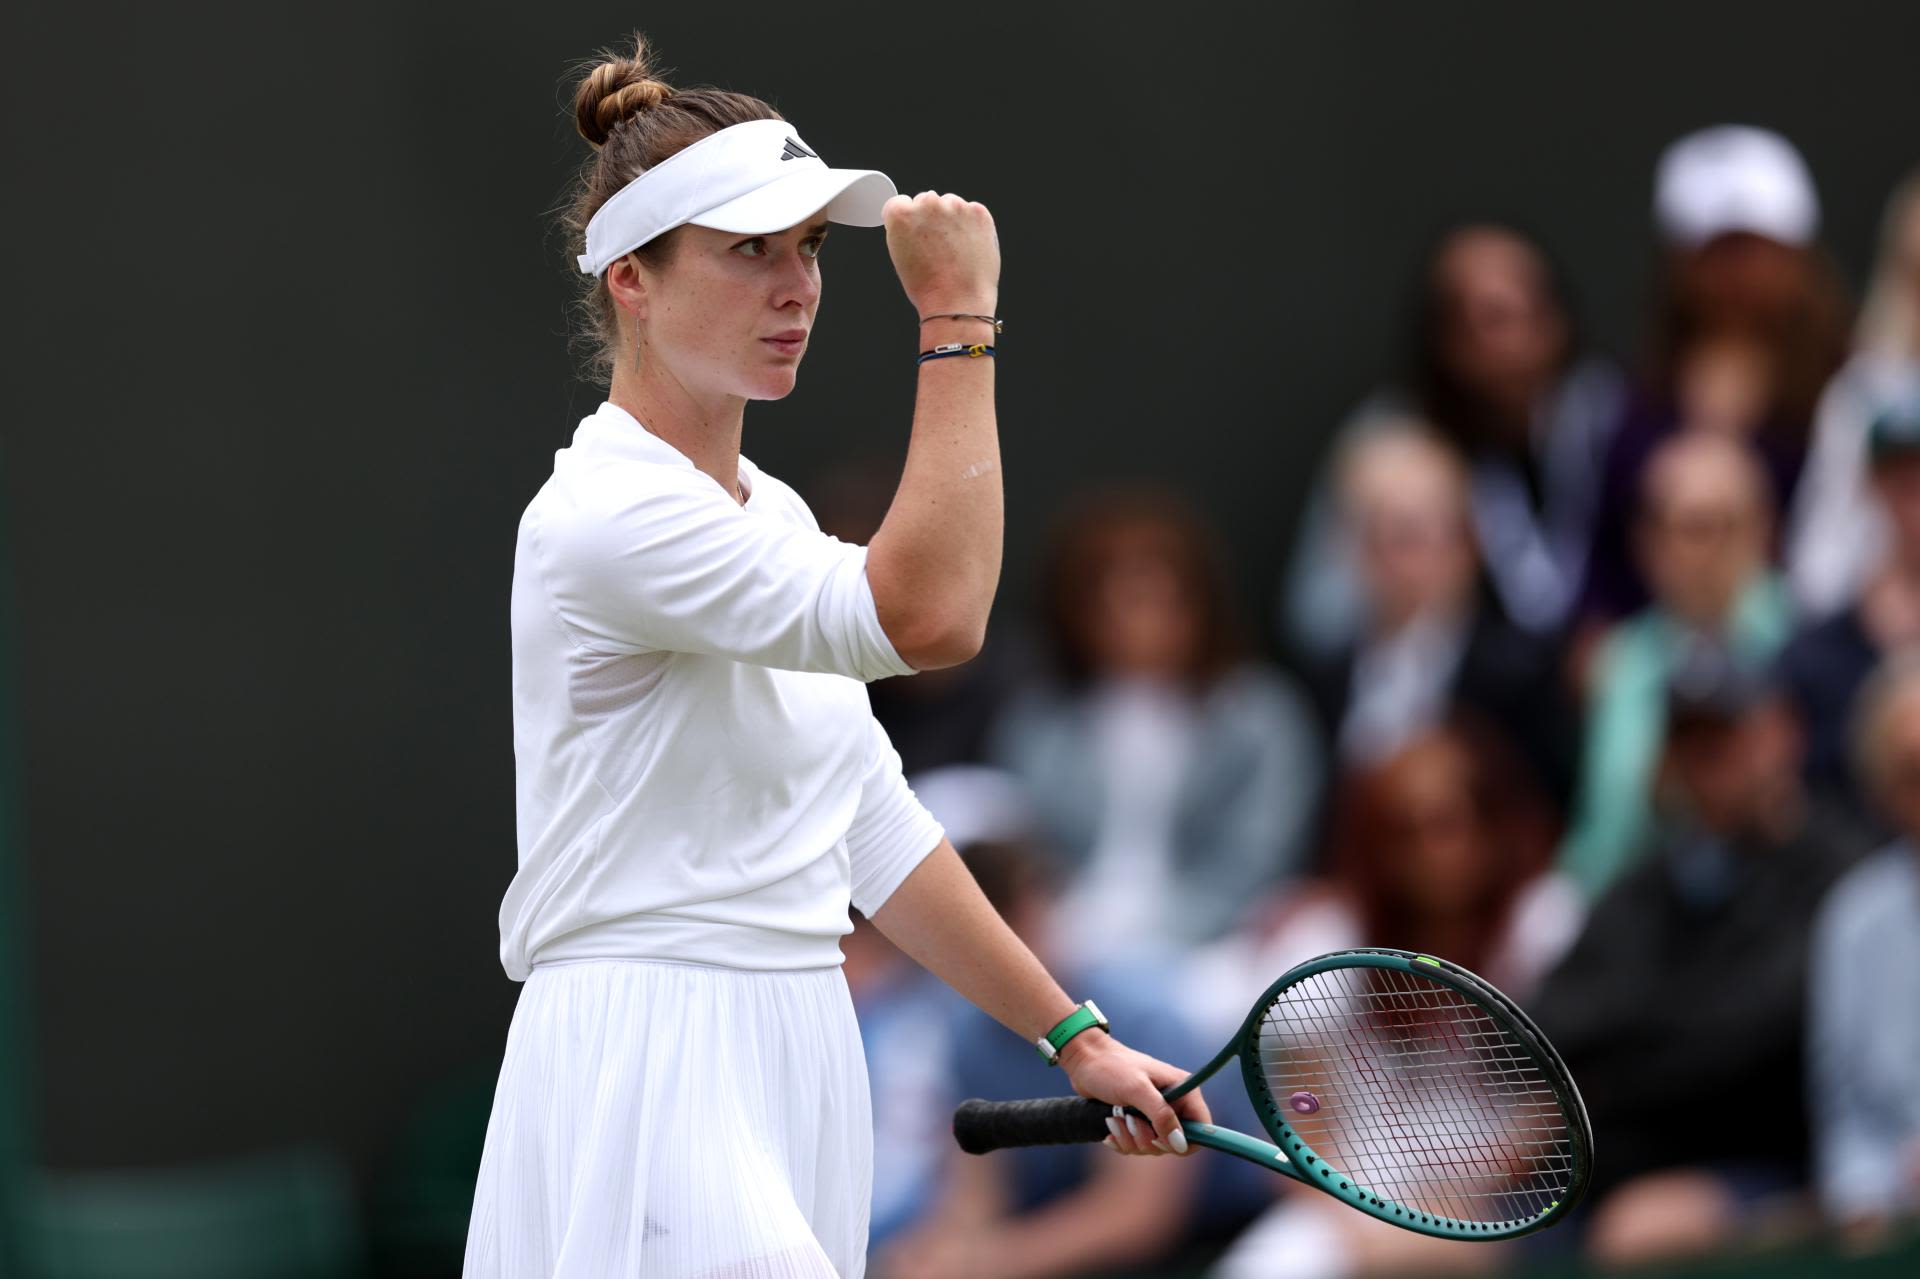 Wimbledon: Elina Svitolina sets up Elena Rybakina showdown in very dominant way